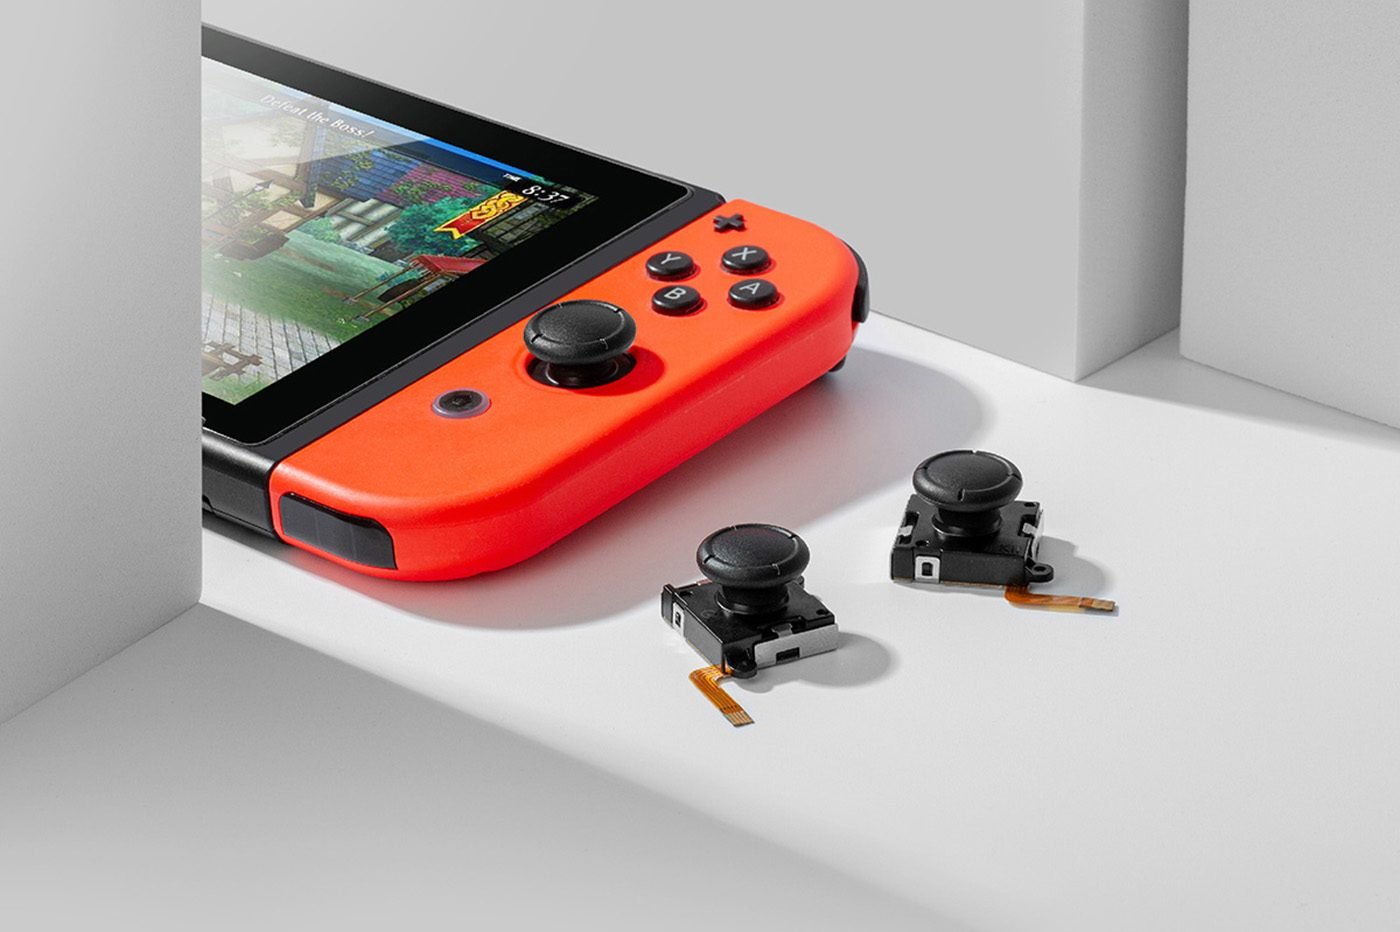 Nintendo Switch : un nouveau joystick pour enfin venir à bout du